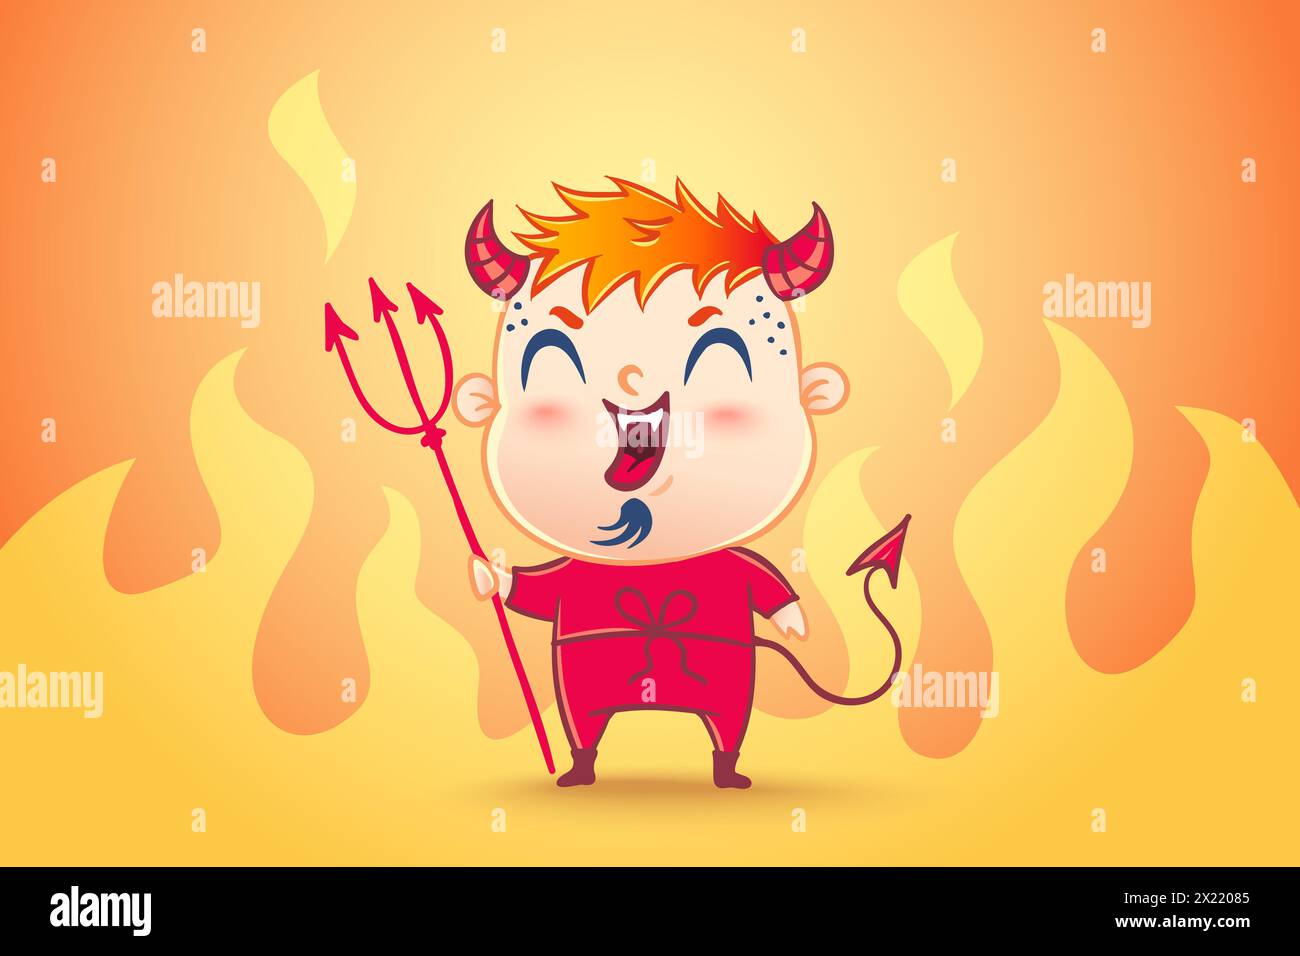 Illustrazione vettoriale di un diavolo carino in stile kawaii. Bene e male. I bambini sono in costume da diavolo Illustrazione Vettoriale